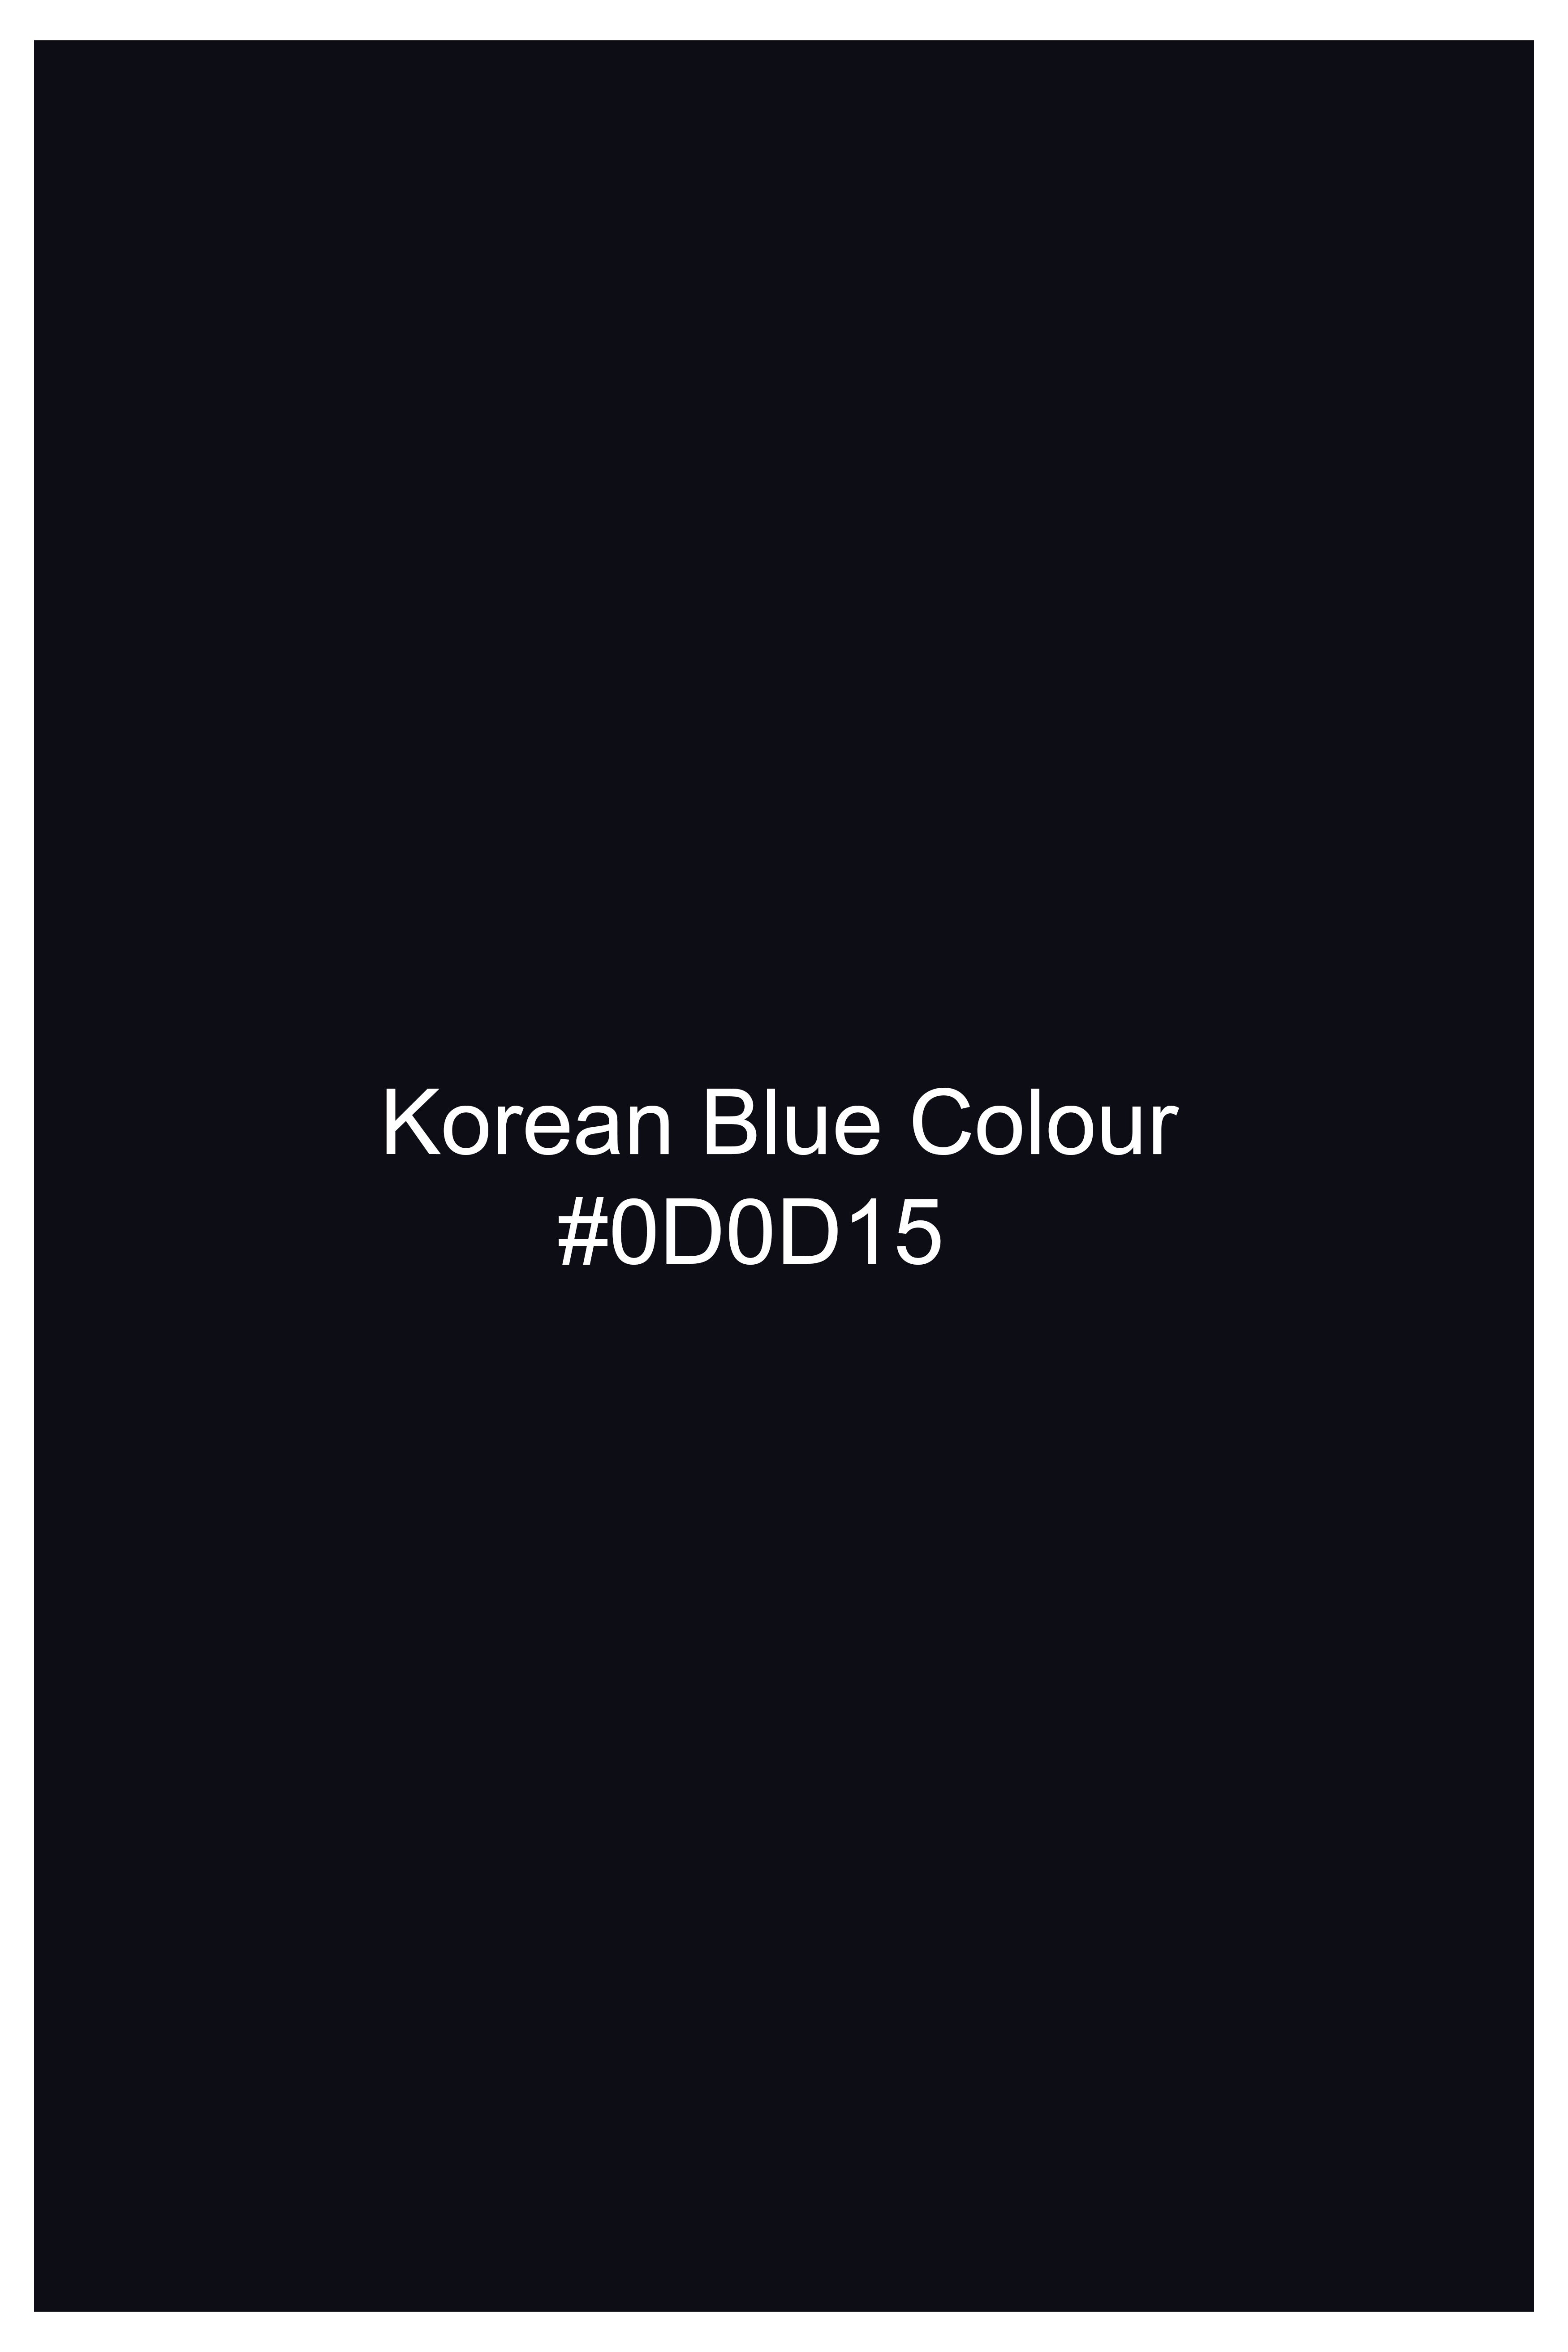 Korean Blue (The Best Blue We have) Wool Rich Stretchable Traveler Waistcoat V3267-36, V3267-38, V3267-40, V3267-42, V3267-44, V3267-46, V3267-48, V3267-50, V3267-52, V3267-54, V3267-56, V3267-58, V3267-60